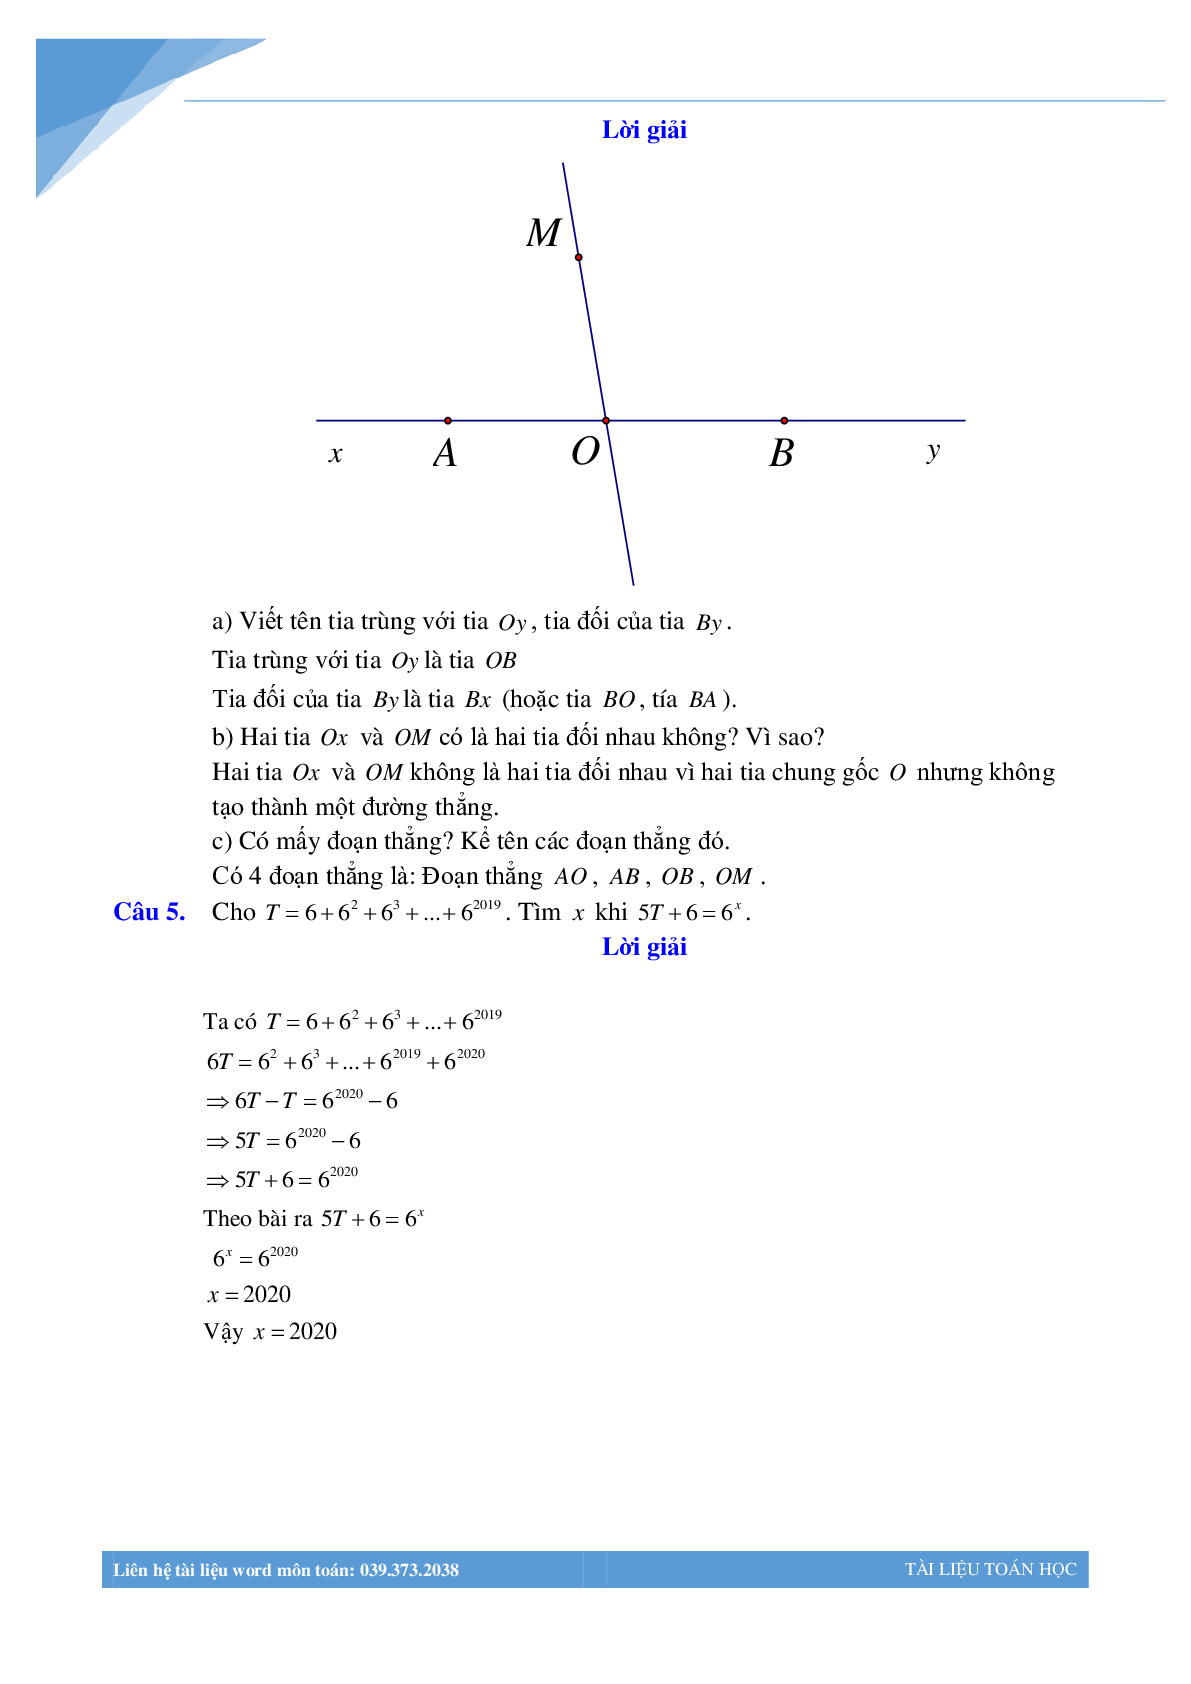 Bộ đề giữa học kì 1 môn toán lớp 6 Hà Nội năm 2021 (trang 3)